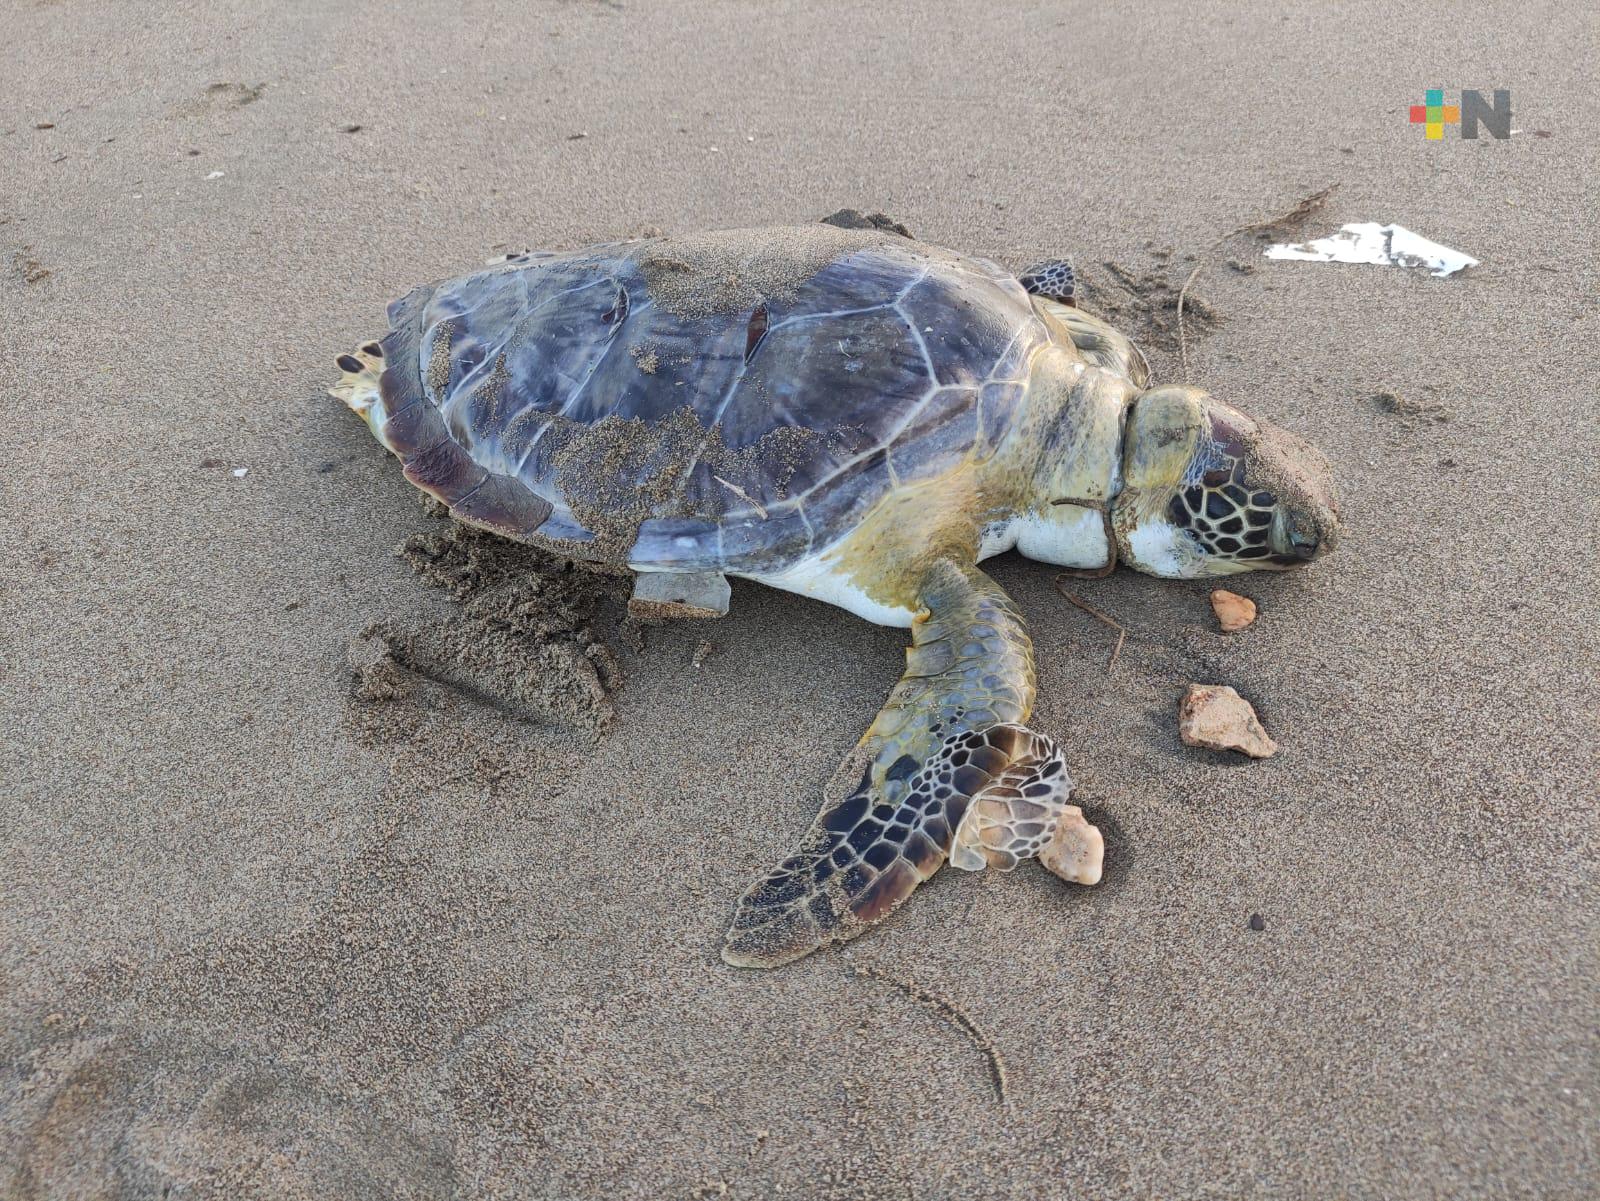 Aparece tortuga muerta en playa de Coatza; peritos indican que se debe a pesca